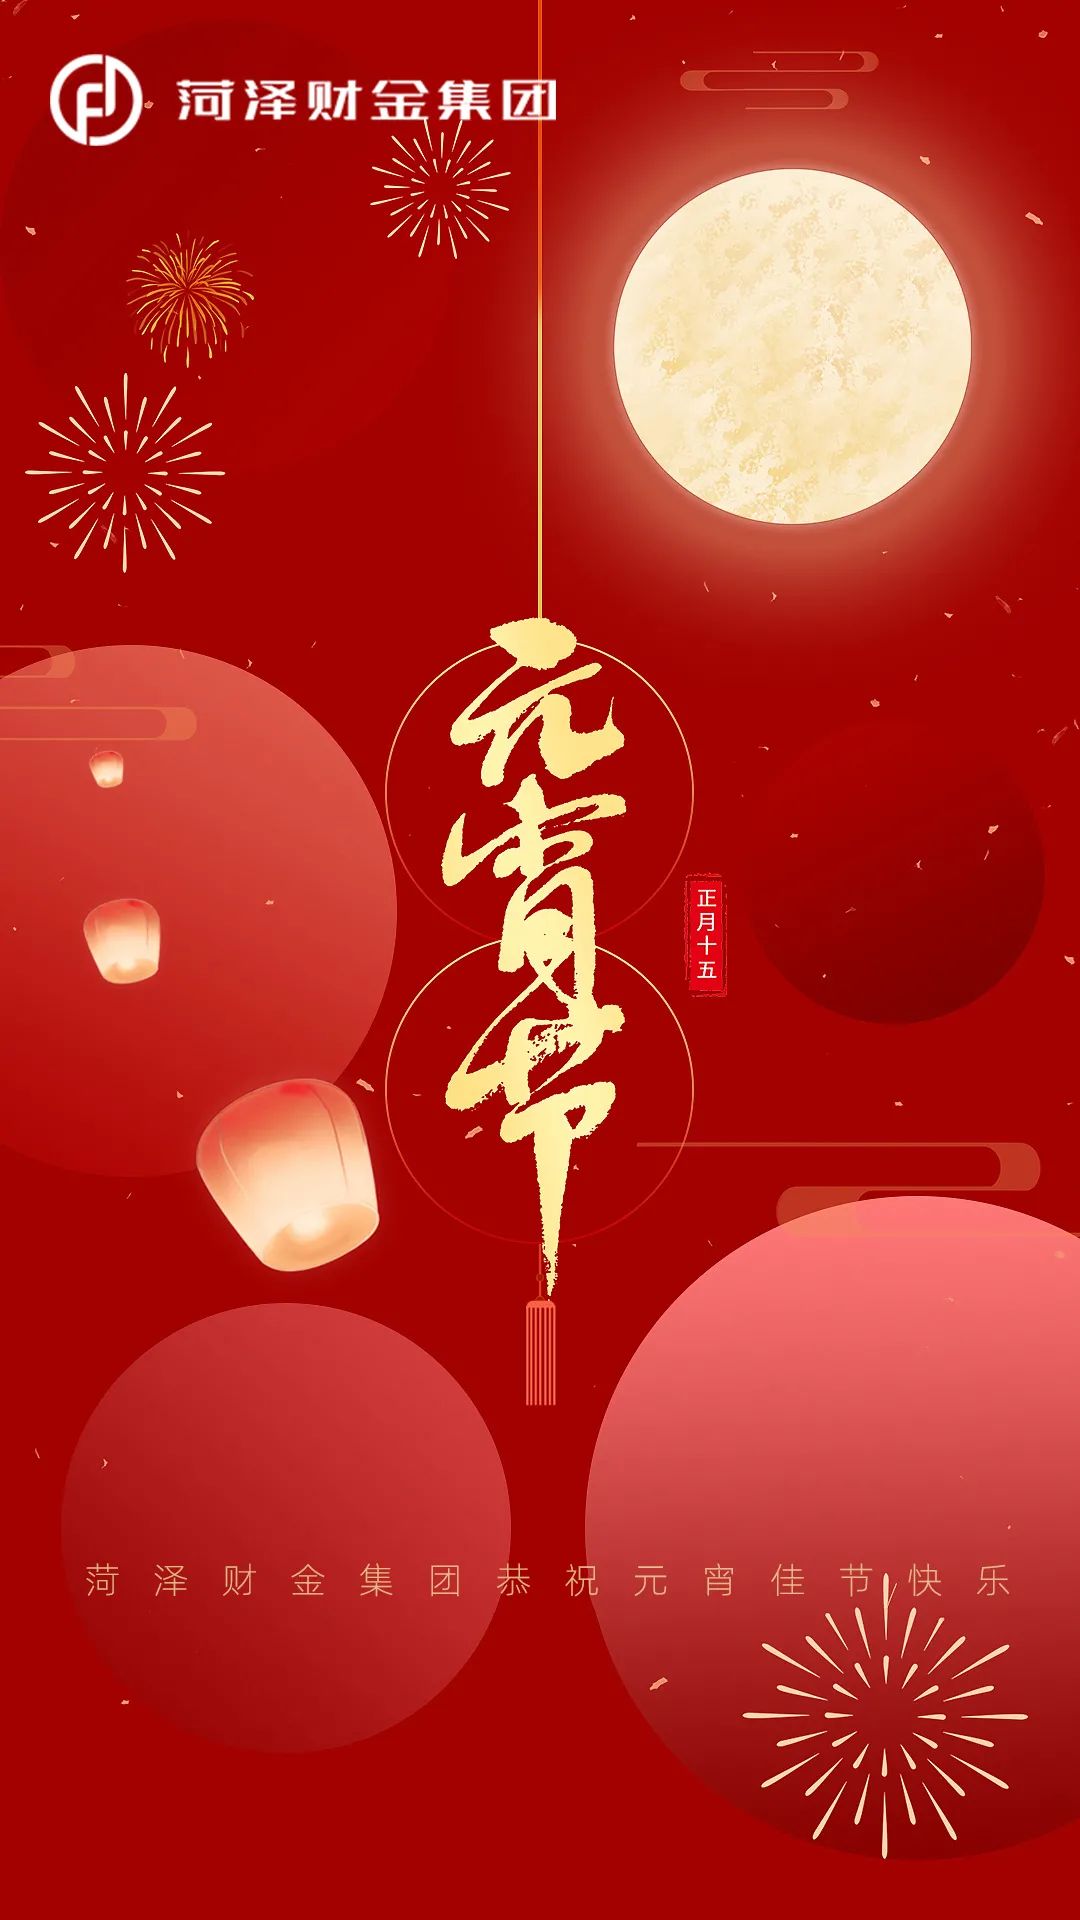 菏澤財金集團恭祝元宵佳節快樂！